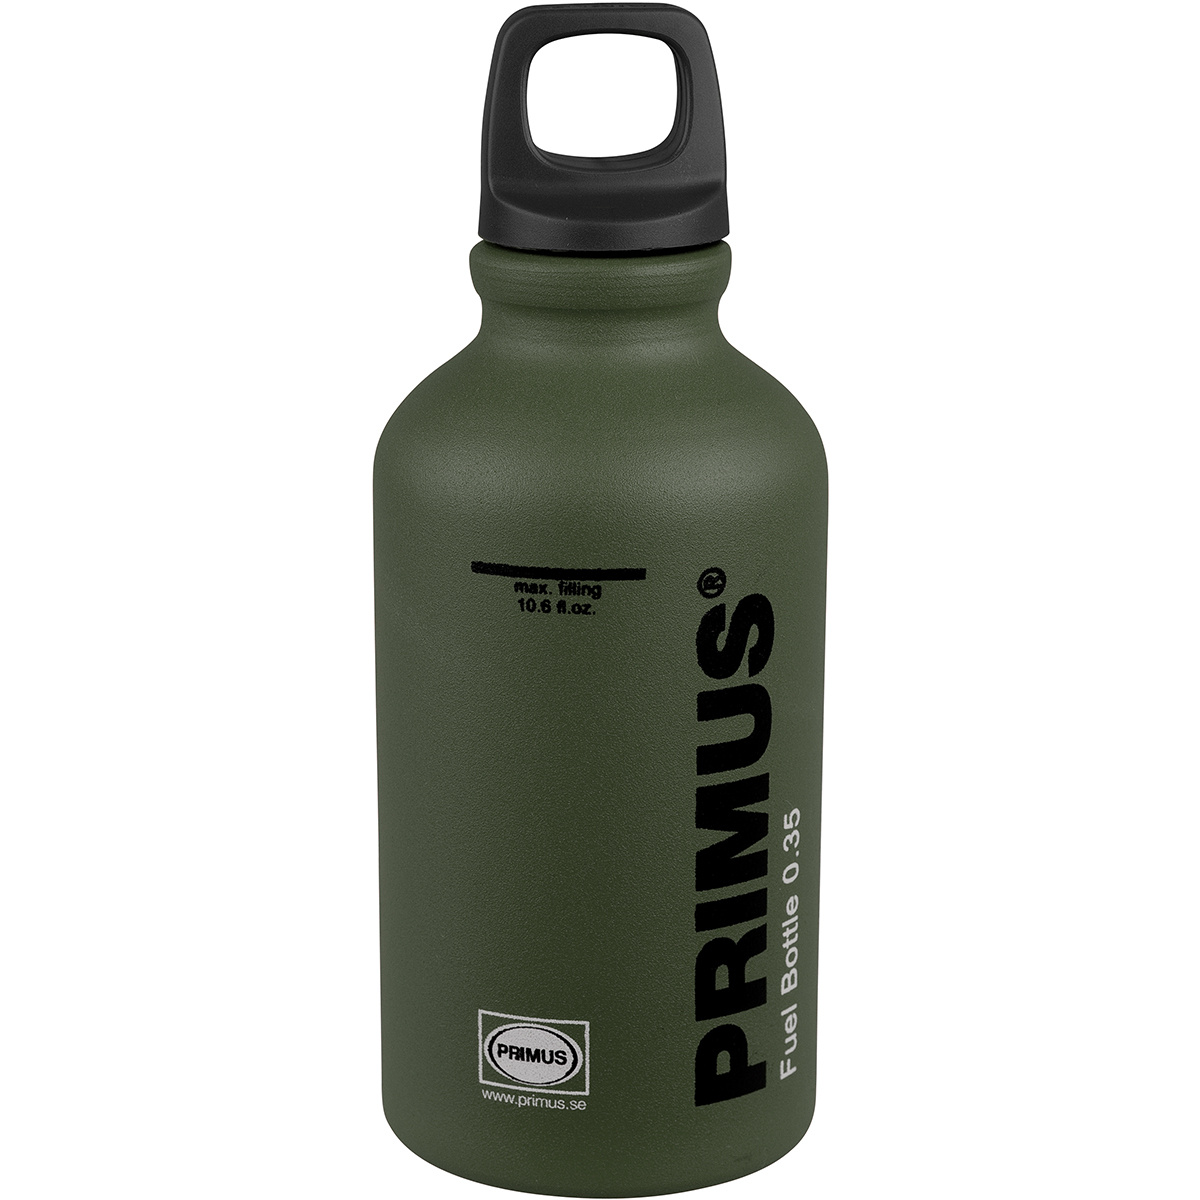 Primus Fuel Bottle Brennstoffflasche von Primus